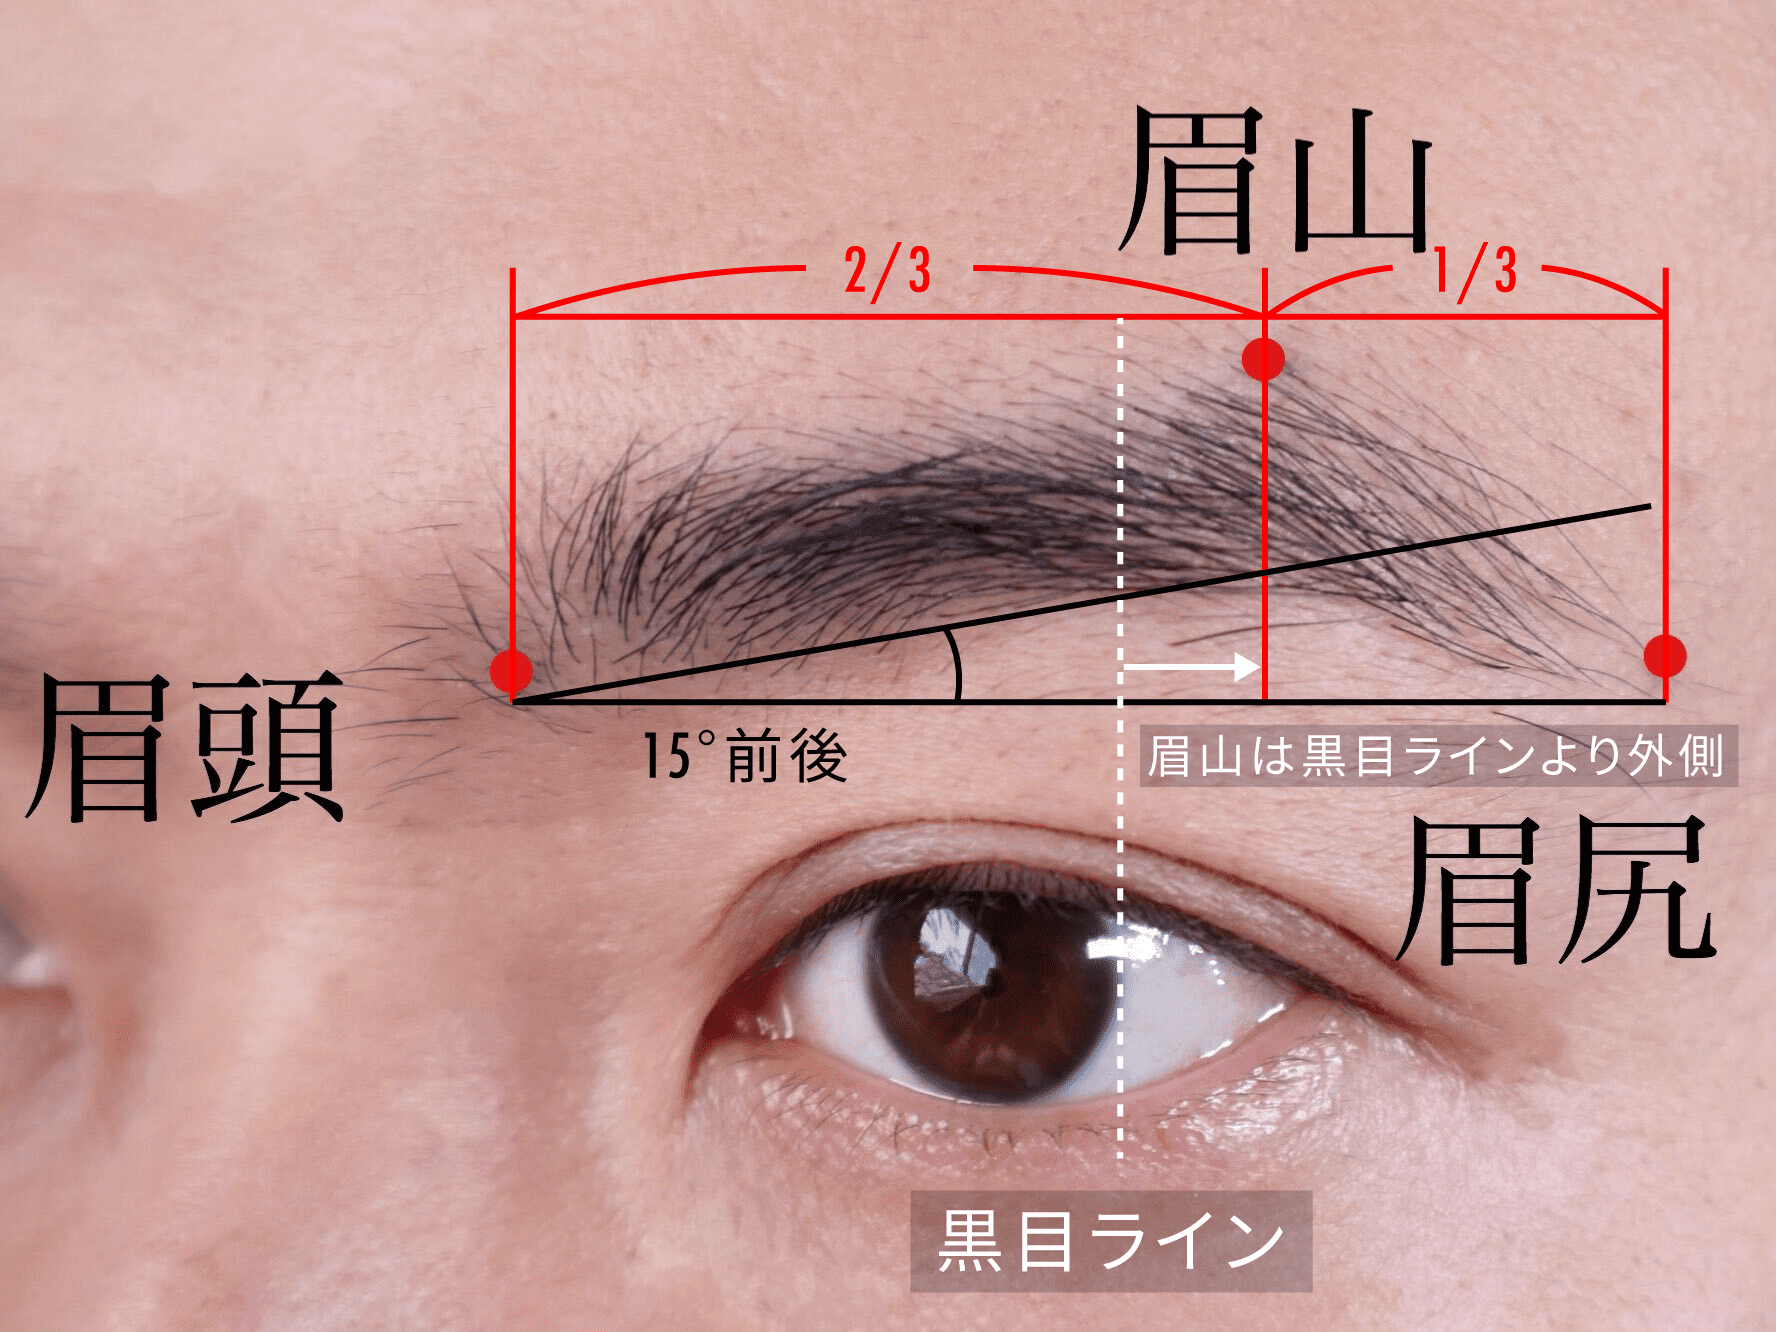 メンズが眉毛を生やす方法を解説 おすすめアイテムも紹介